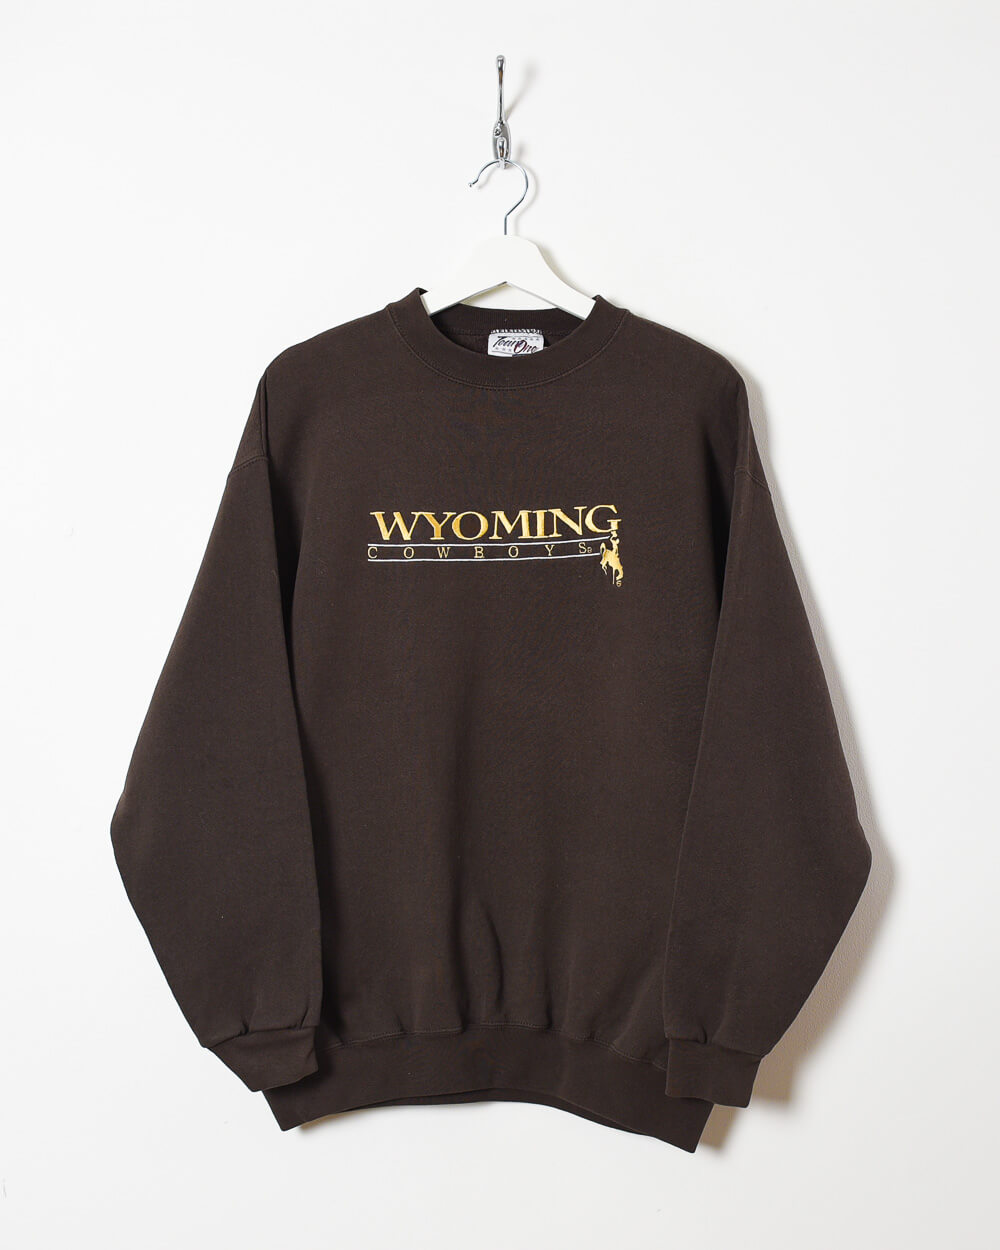 Brown Team Wyoming Cowboys Sweatshirt - Large